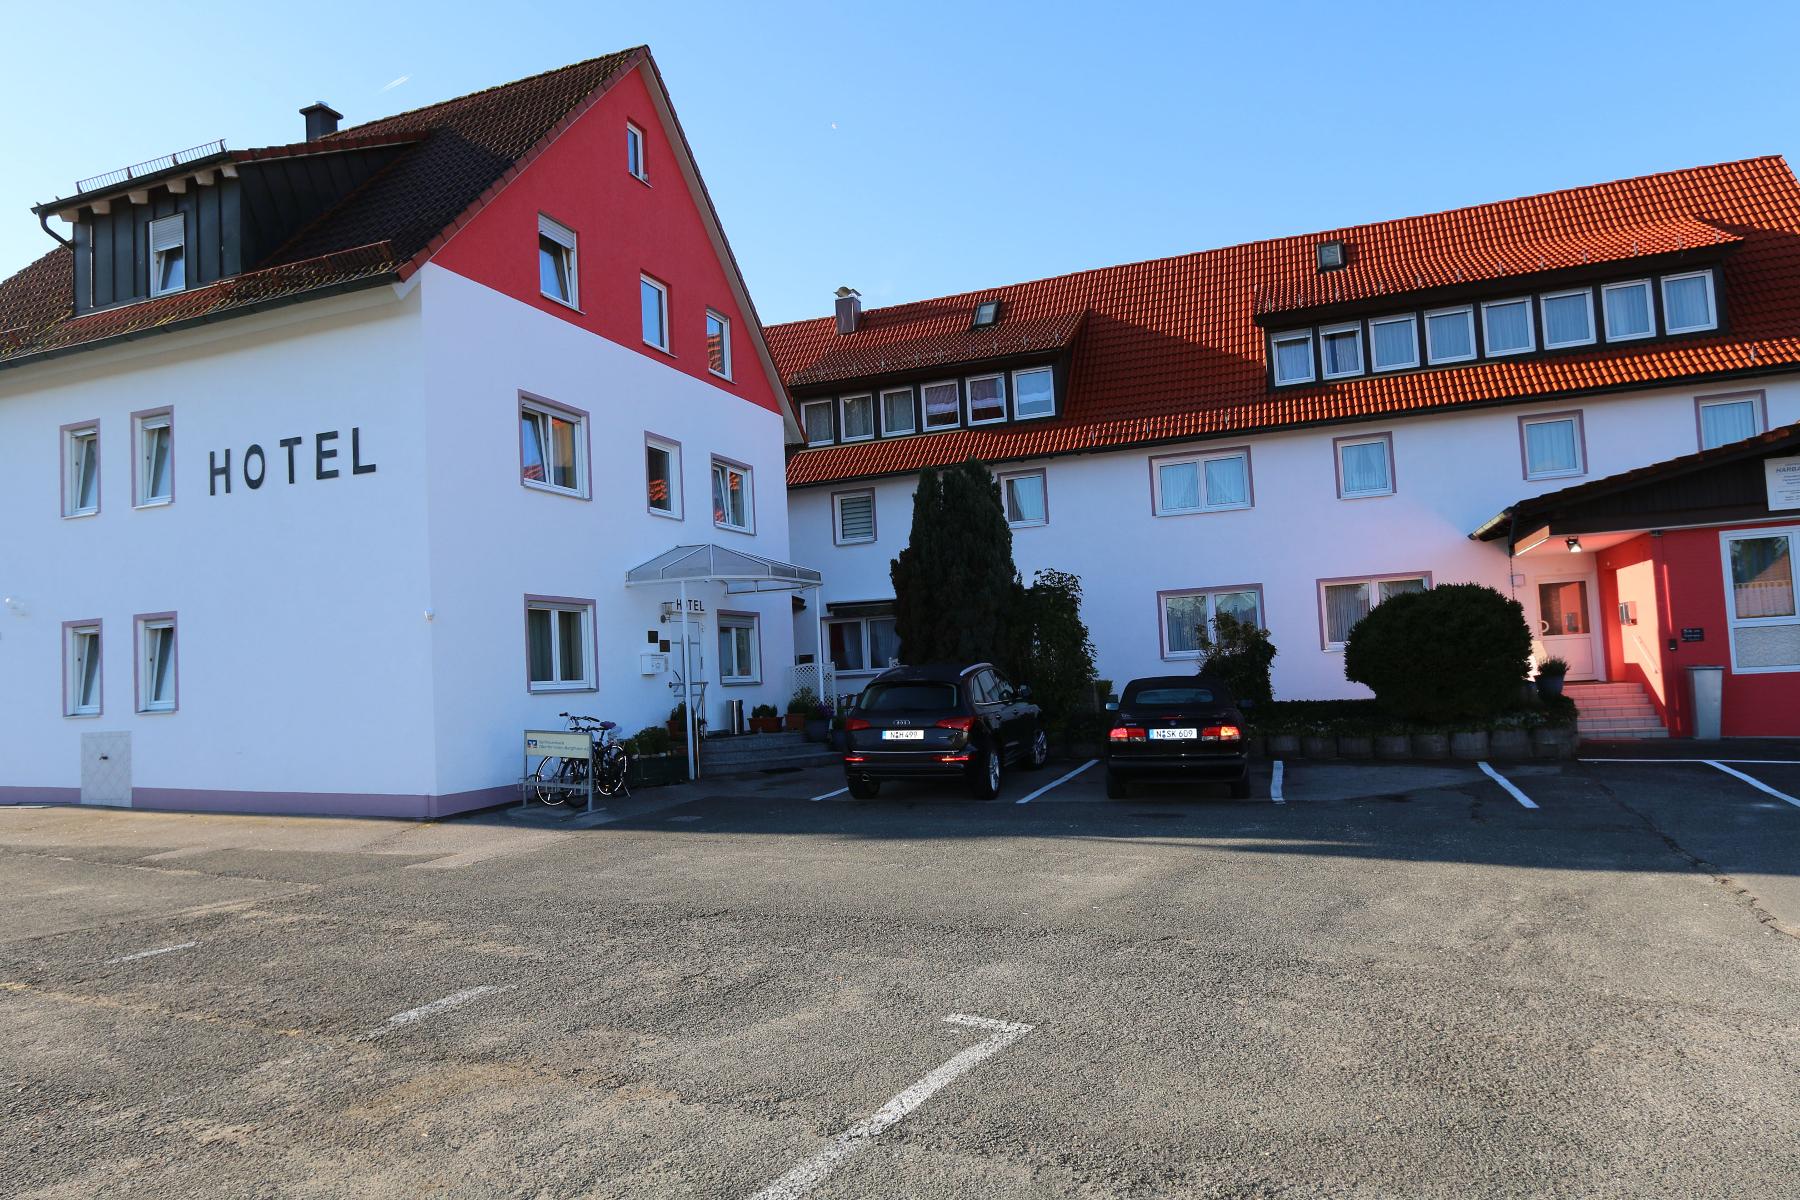 Dieses ruhig gelegene 3-Sterne-Hotel befindet sich nur 3km von der Gemeinde Schwarzenbruck und eine 20-minütige Fahrt von Nürnberg entfernt. Das Hotel Harbauer verfügt über großzügige Zimmer, die mit Liebe zum Detail stilvoll modern eingerichtet sind.Ein reichhaltiges Frühstücksbuffet ...